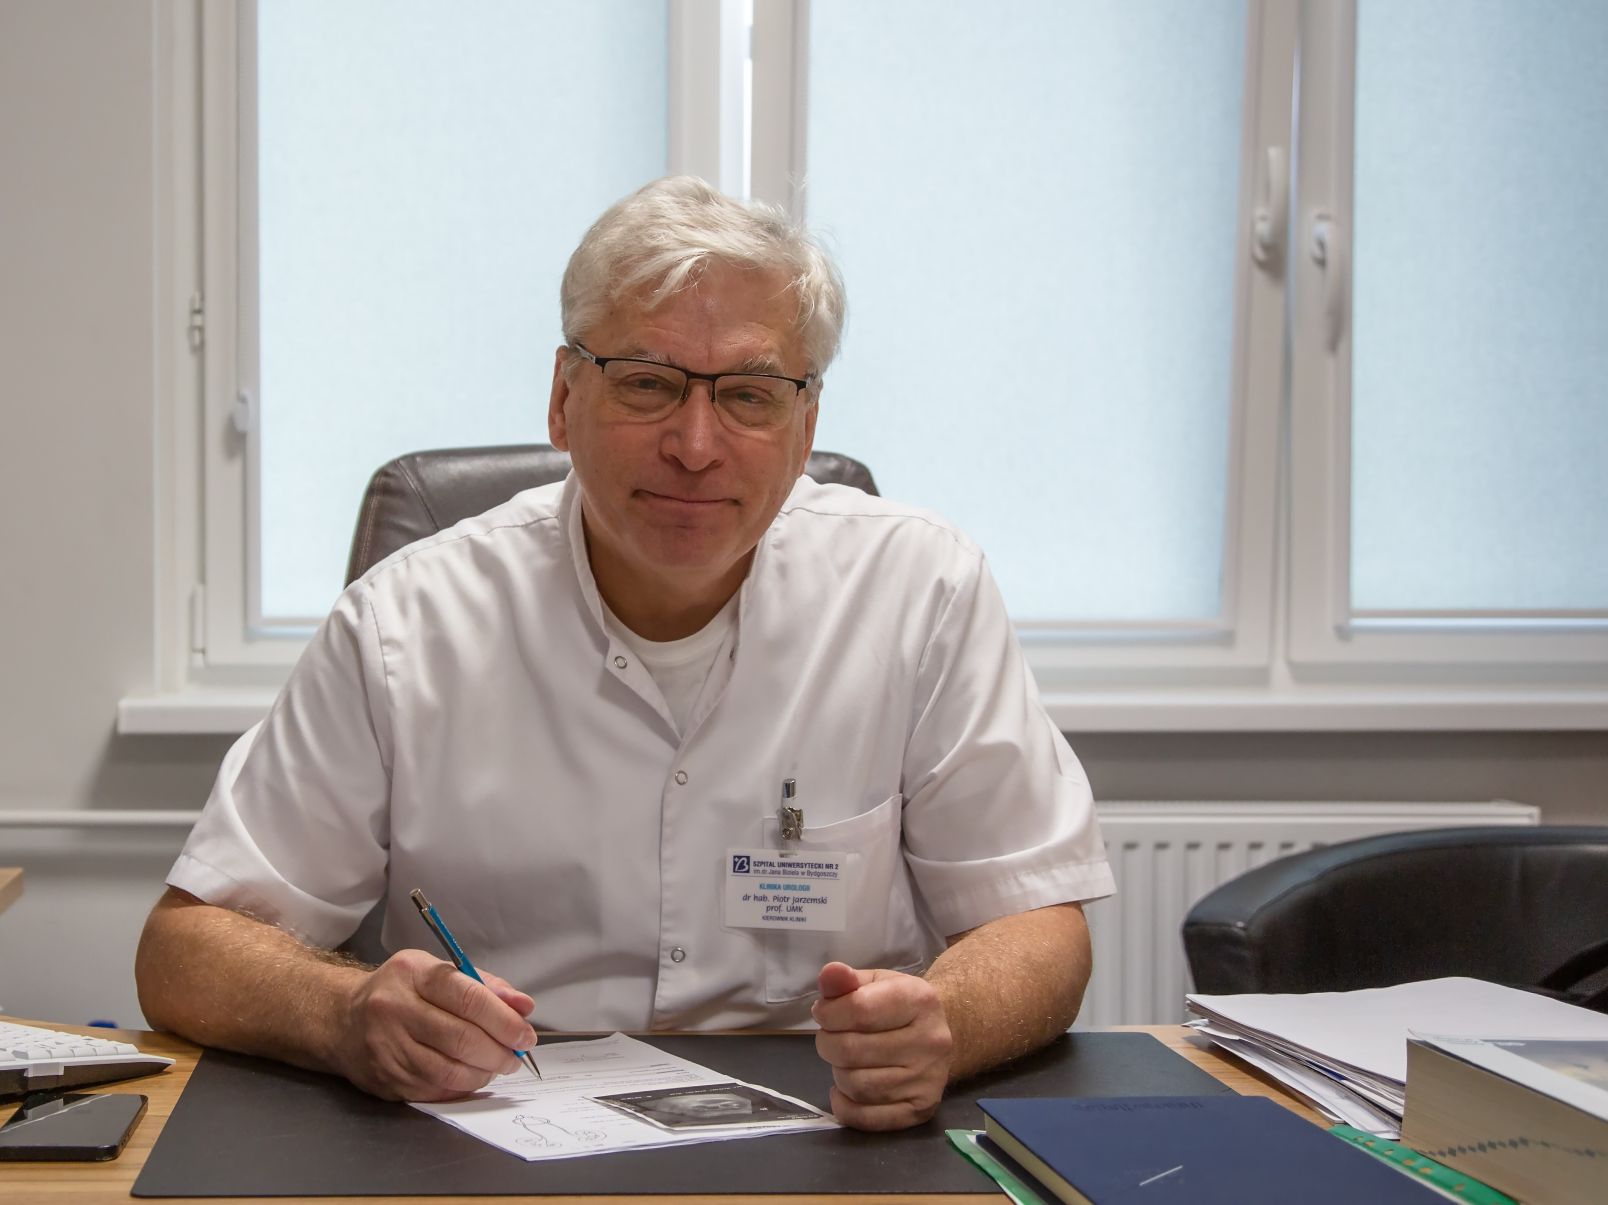 Dr hab. Piotr Jarzemski, prof. UMK z Katedry Urologii na Wydziale Nauk o Zdrowiu Collegium Medicum UMK siedzi w białym fartuchu przy biurku z długopisem w ręku